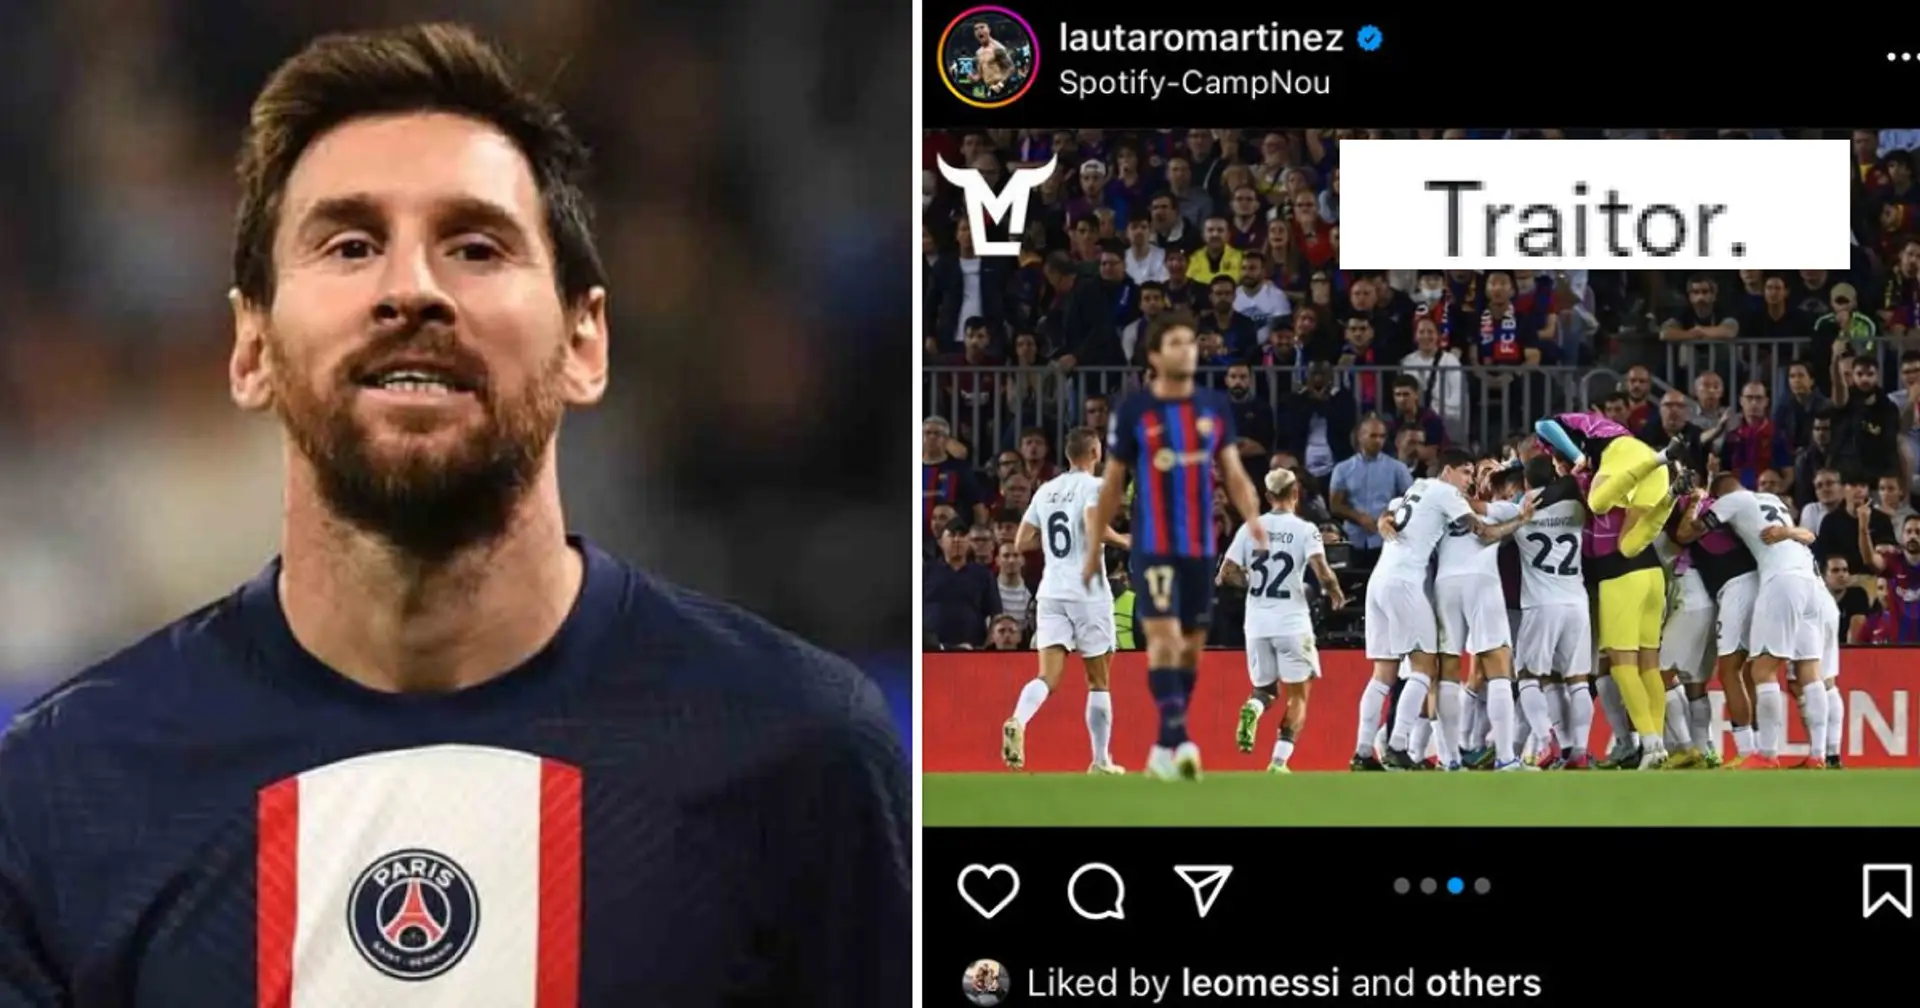 "Das ist der Typ, den Barcelona zurückholen will..." - Fans sind nicht glücklich darüber, dass Messi Lautaros Post nach dem Remis gegen Inter gelikt hat